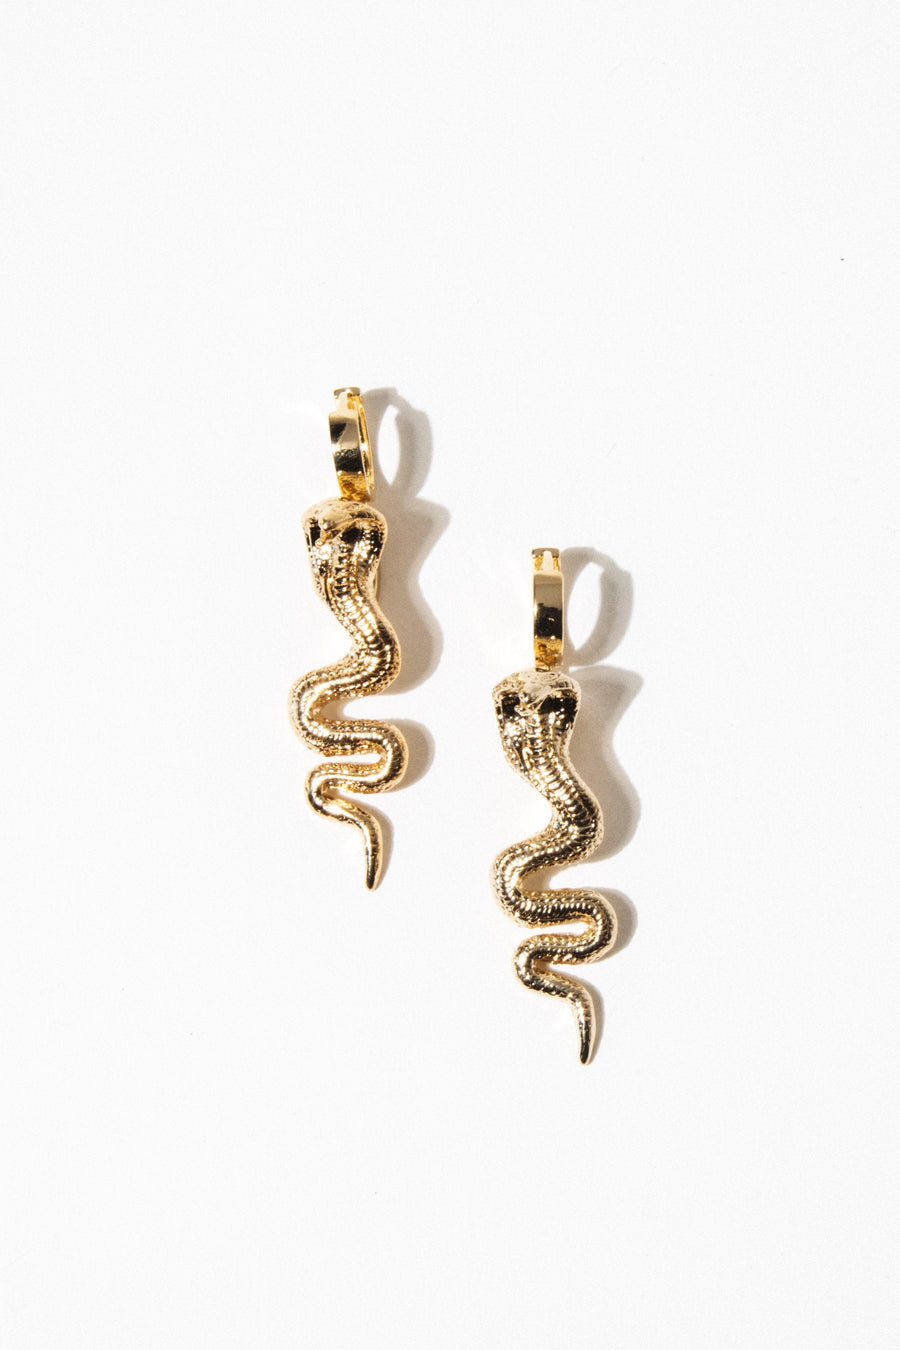 Goddess Jewelry Gold / Pair Cobra Snake Bite Earrings